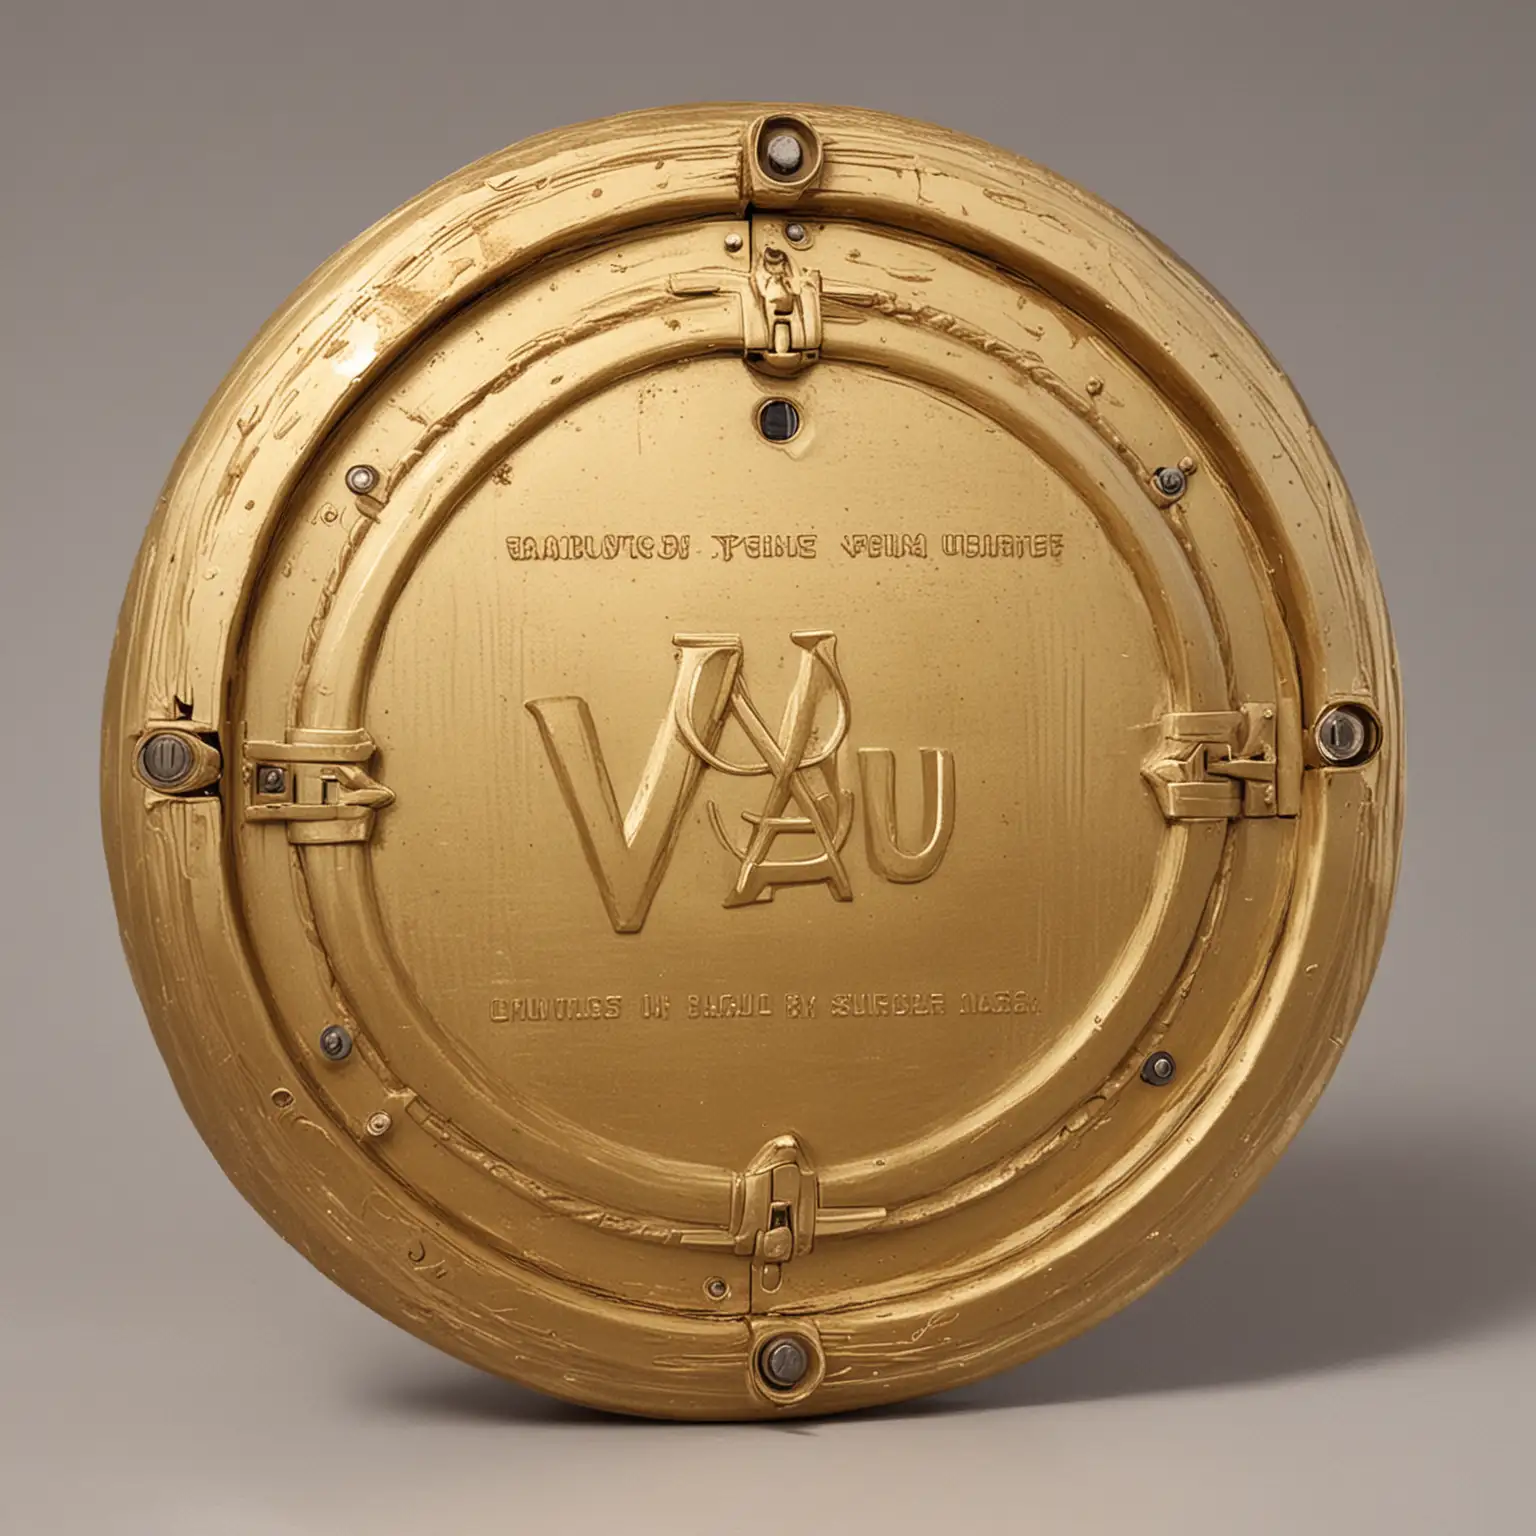 Направи златен кръгъл сейф с надпис VAU